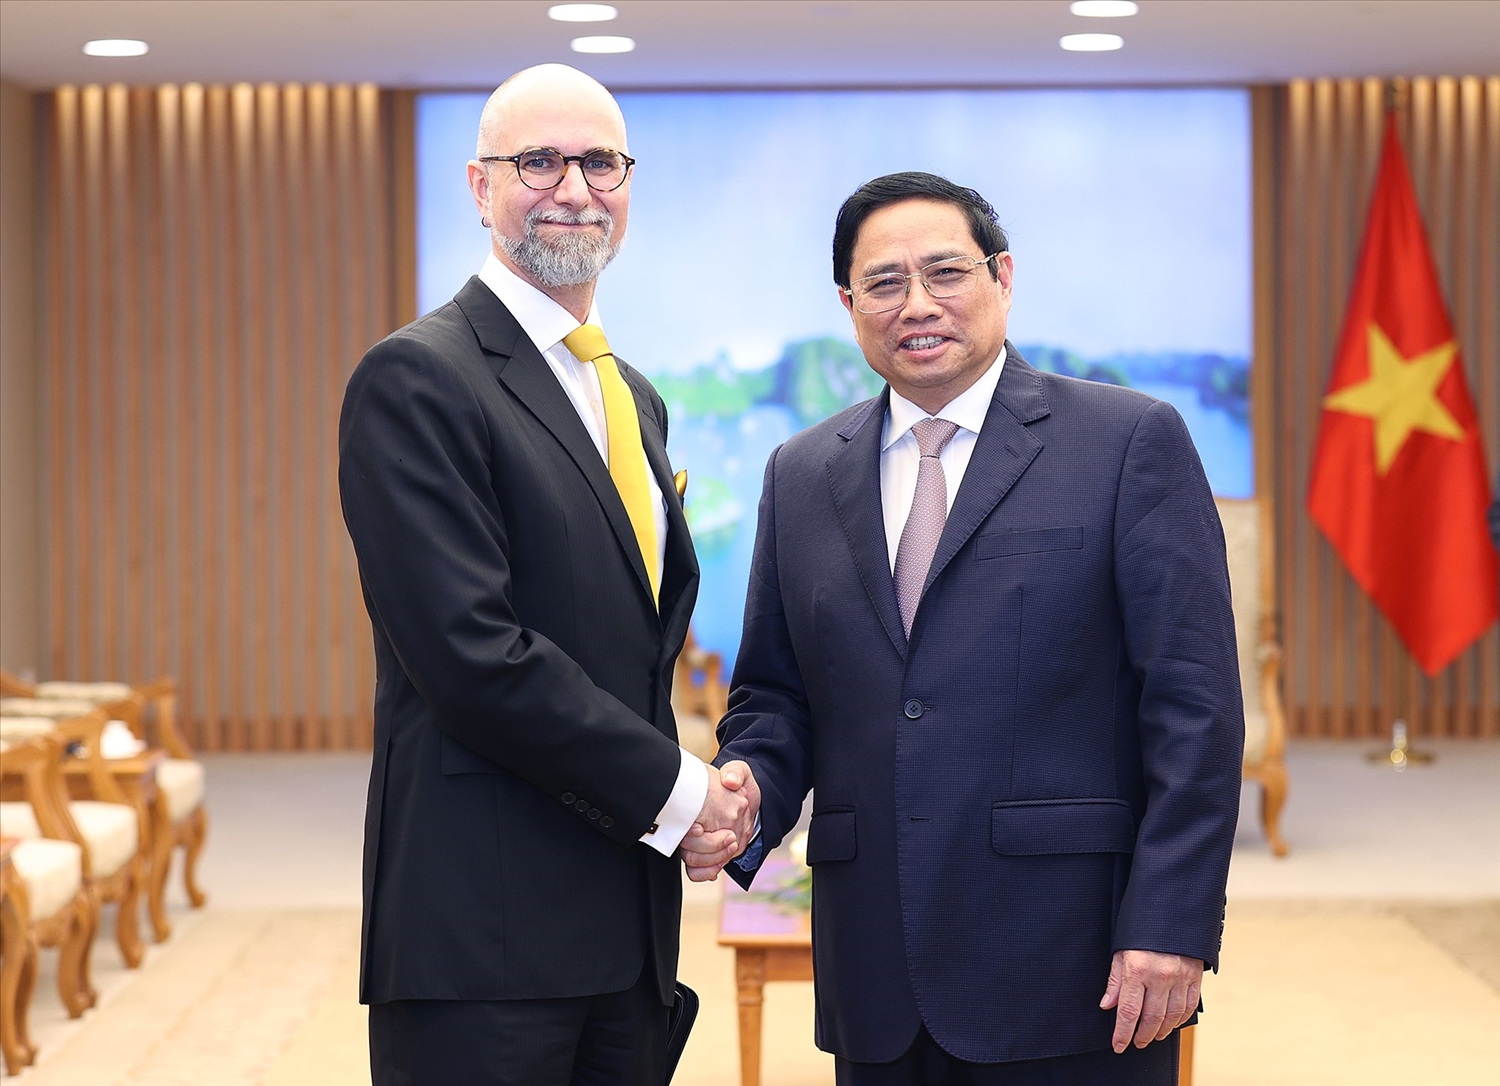 Thủ tướng Phạm Minh Chính tiếp Đại sứ Canada tại Việt Nam Shawn Perry Steil đến chào xã giao - Ảnh: VGP/Nhật Bắc